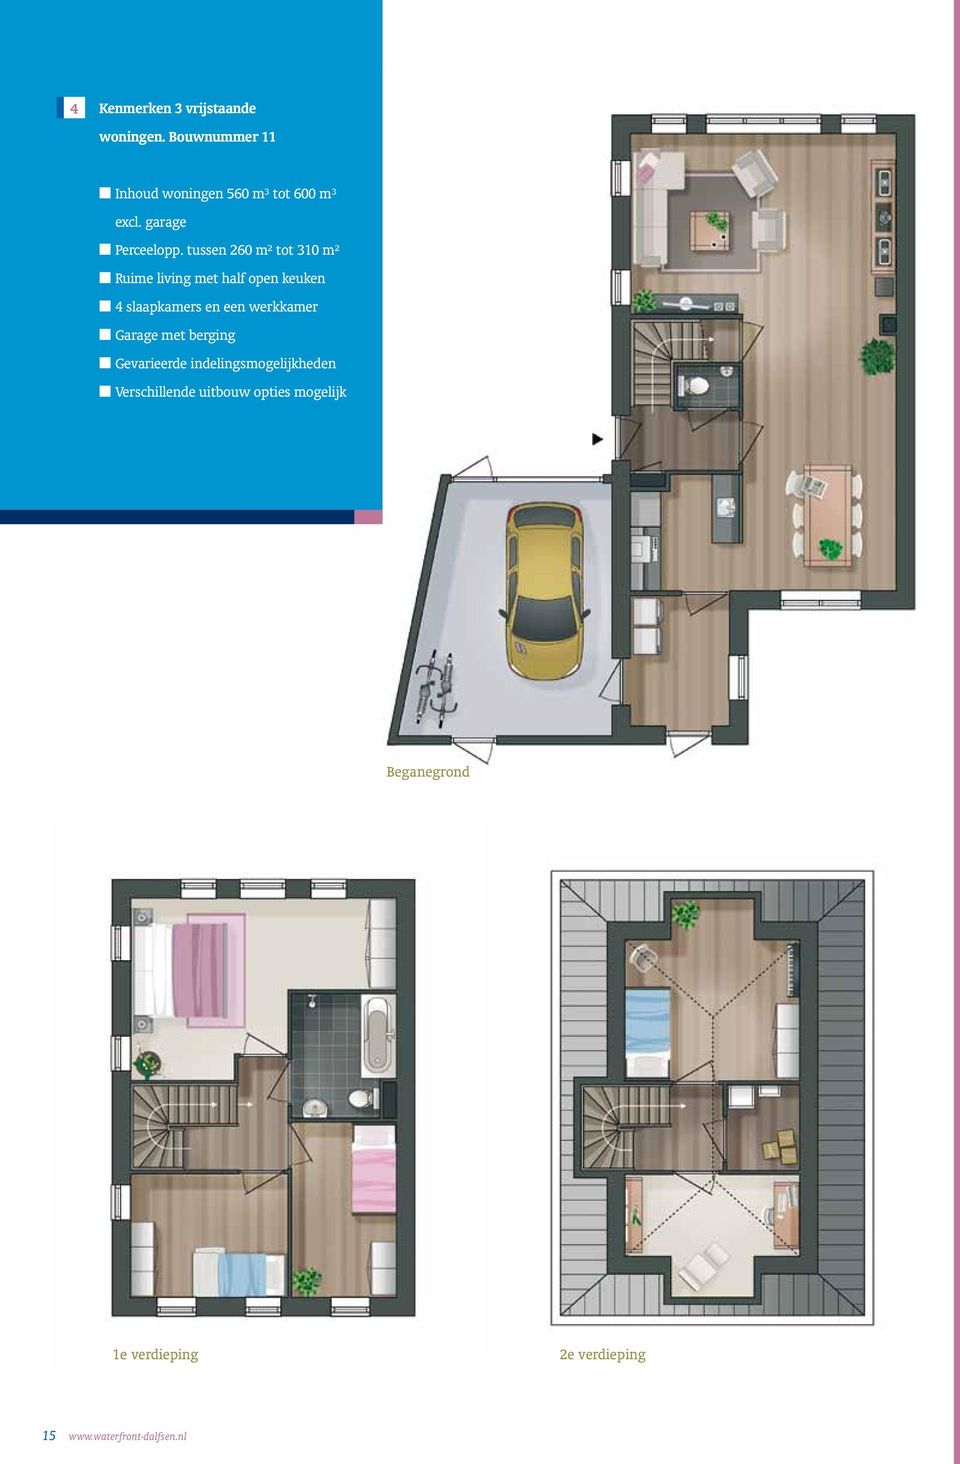 tussen 260 m² tot 310 m² Ruime living met half open keuken 4 slaapkamers en een werkkamer